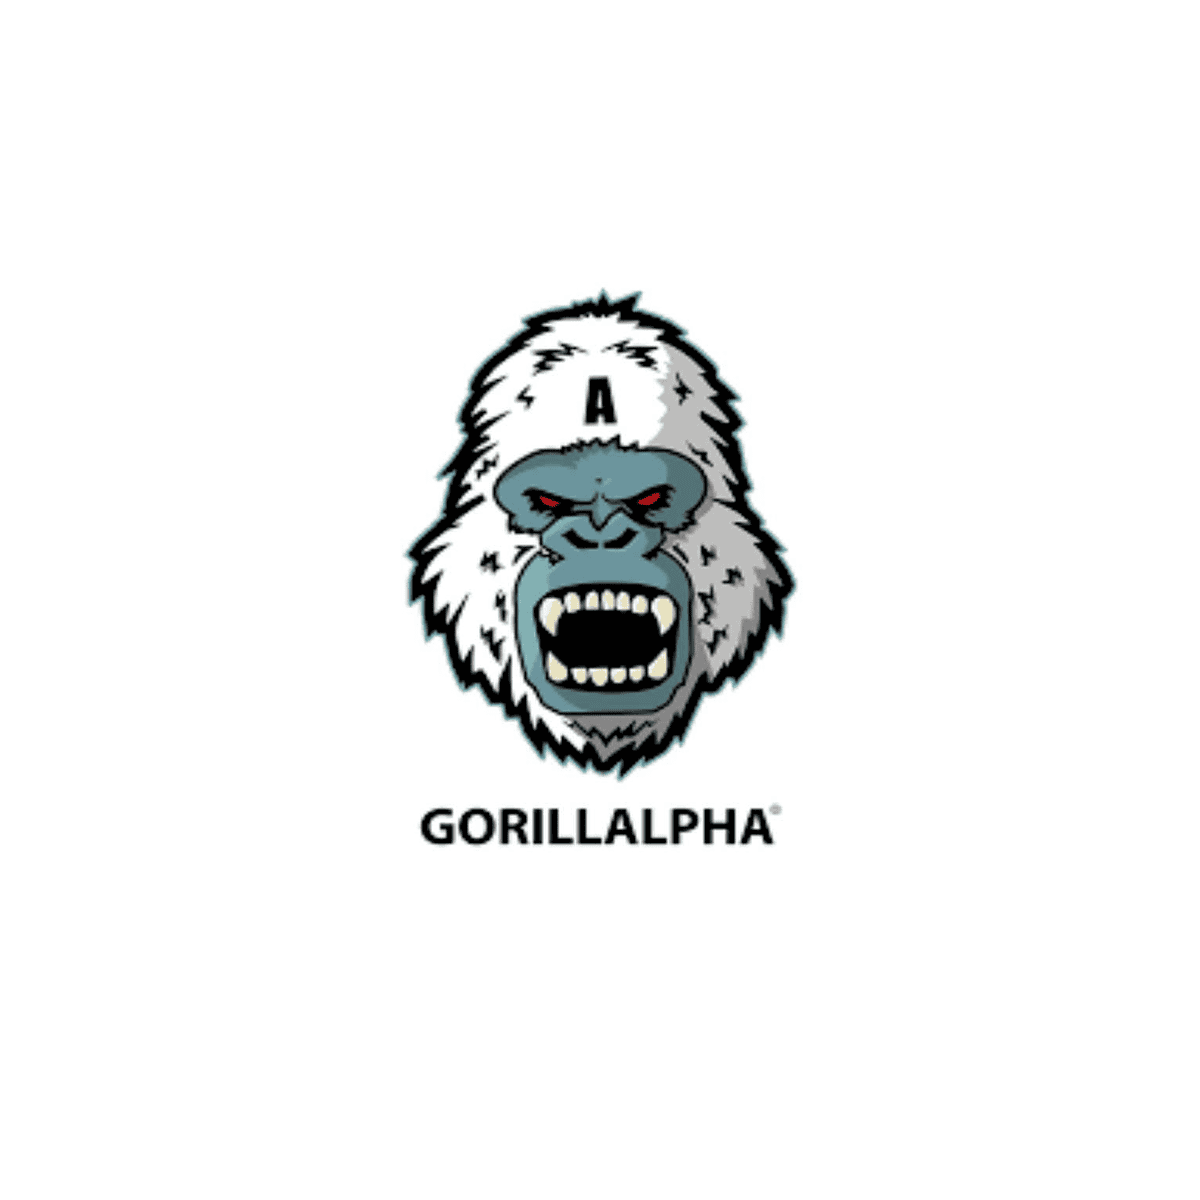 GORILLALPHA